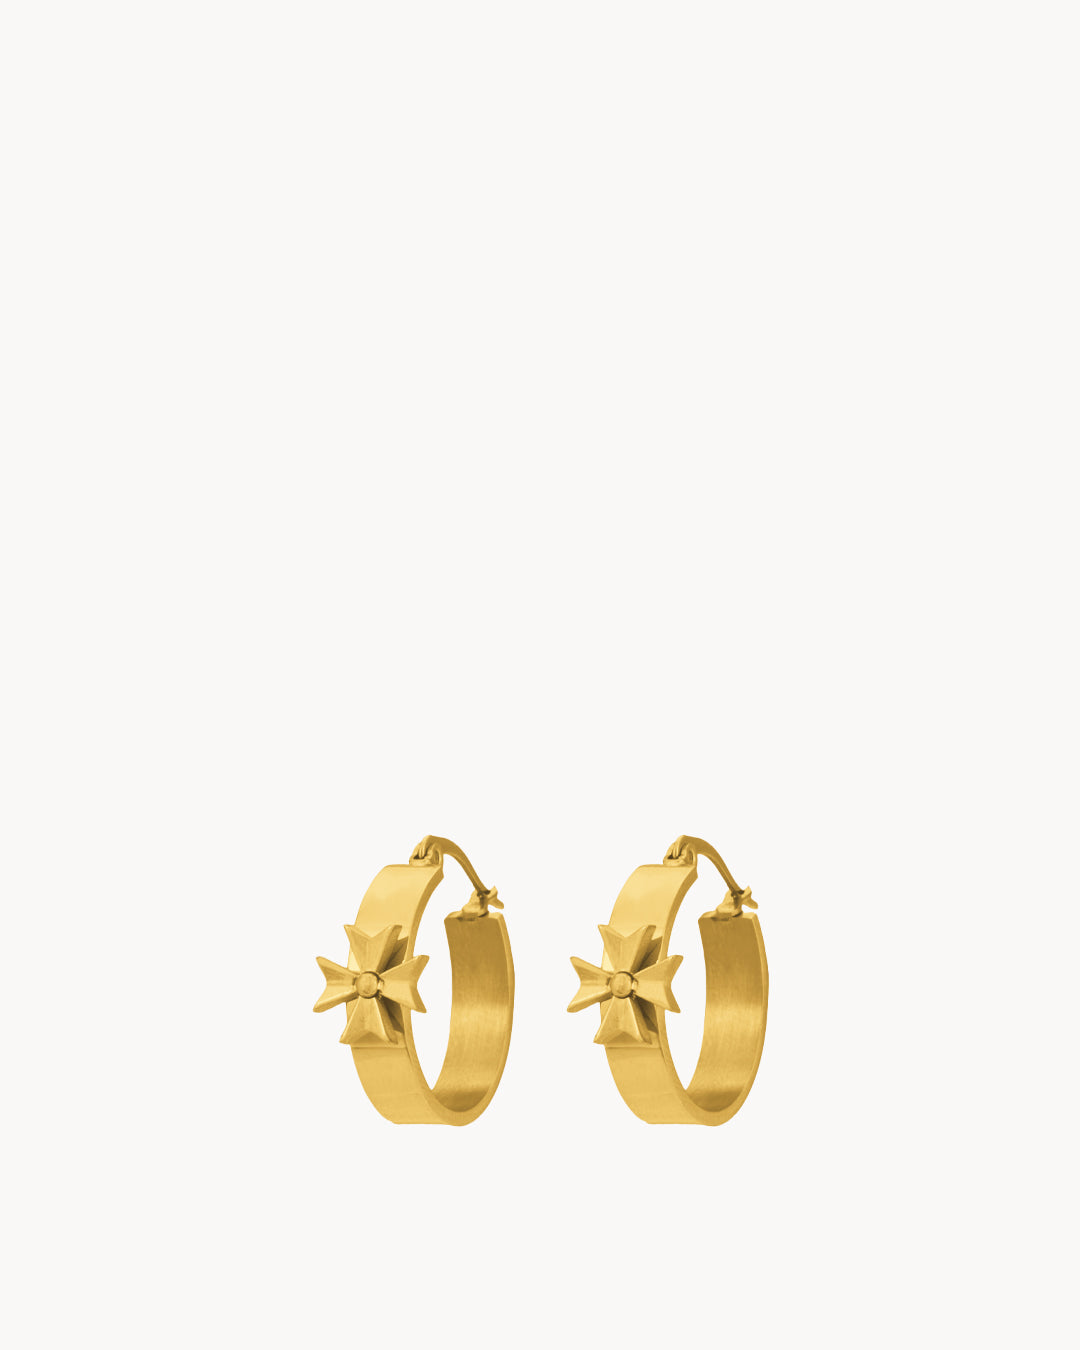 Kavallieri Honour Maltese Cross Hoop Earrings, Gold